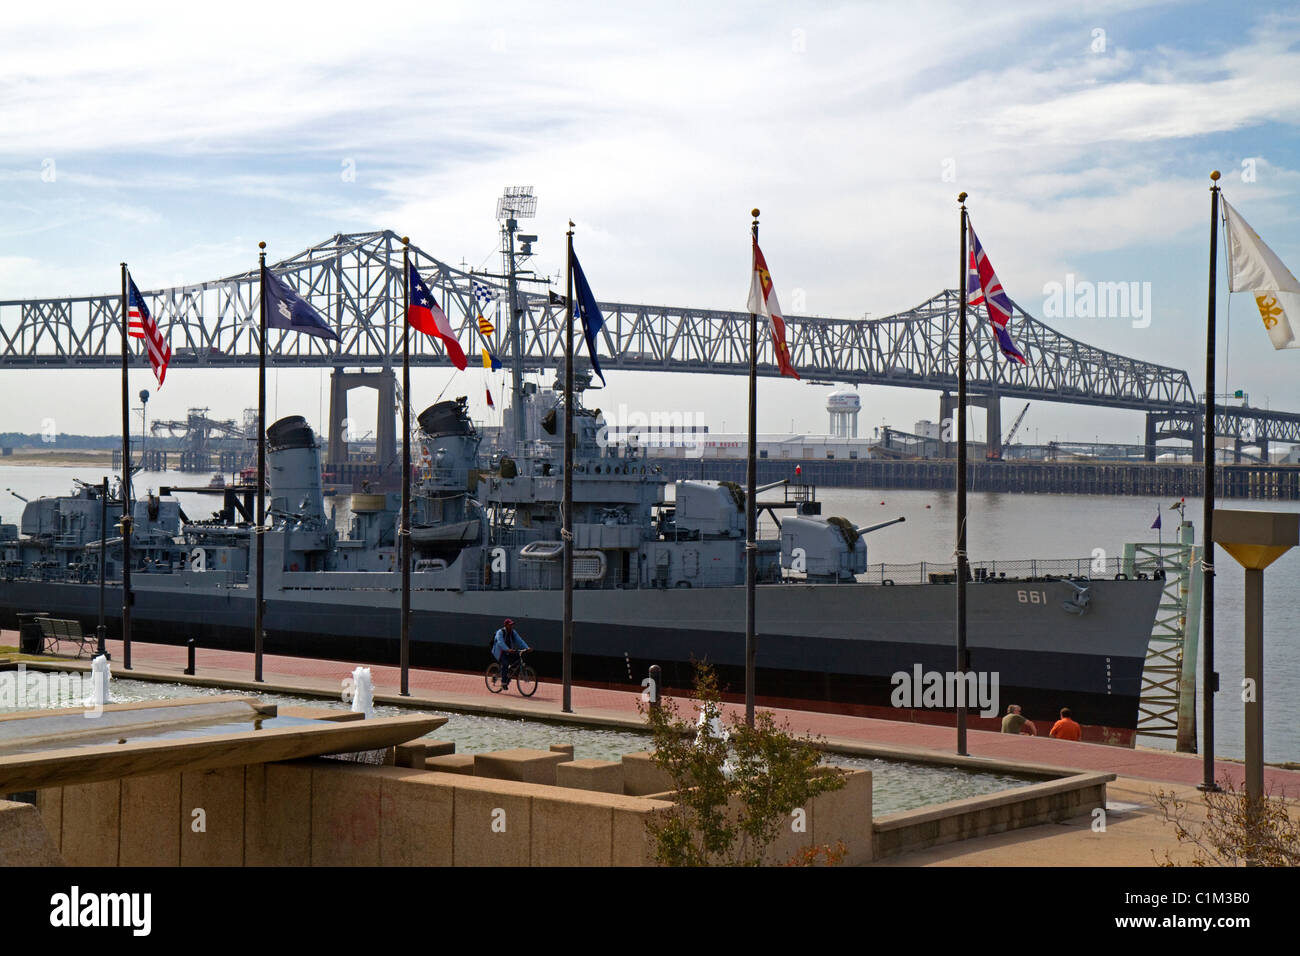 La Marine USS Kidd fait partie de la Louisiane Veterans Memorial sur la rivière Mississippi, à Baton Rouge, Louisiane. Banque D'Images